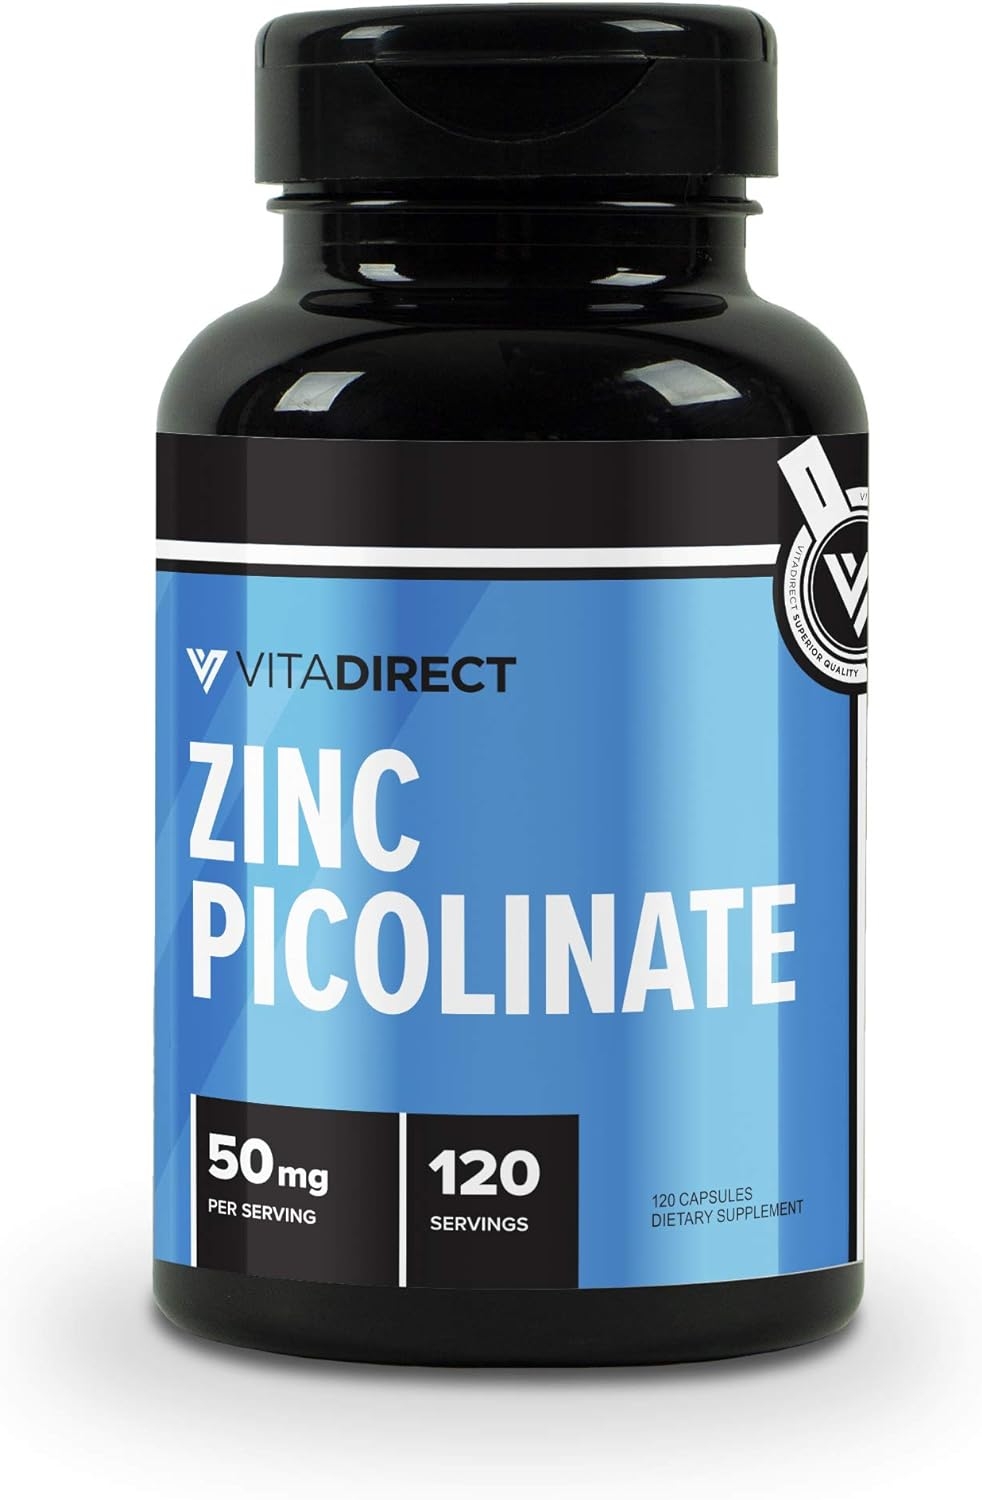 VitaDirect Premium Zinc Picolinate Capsules 50mg, 120 Capsules - 120 ...